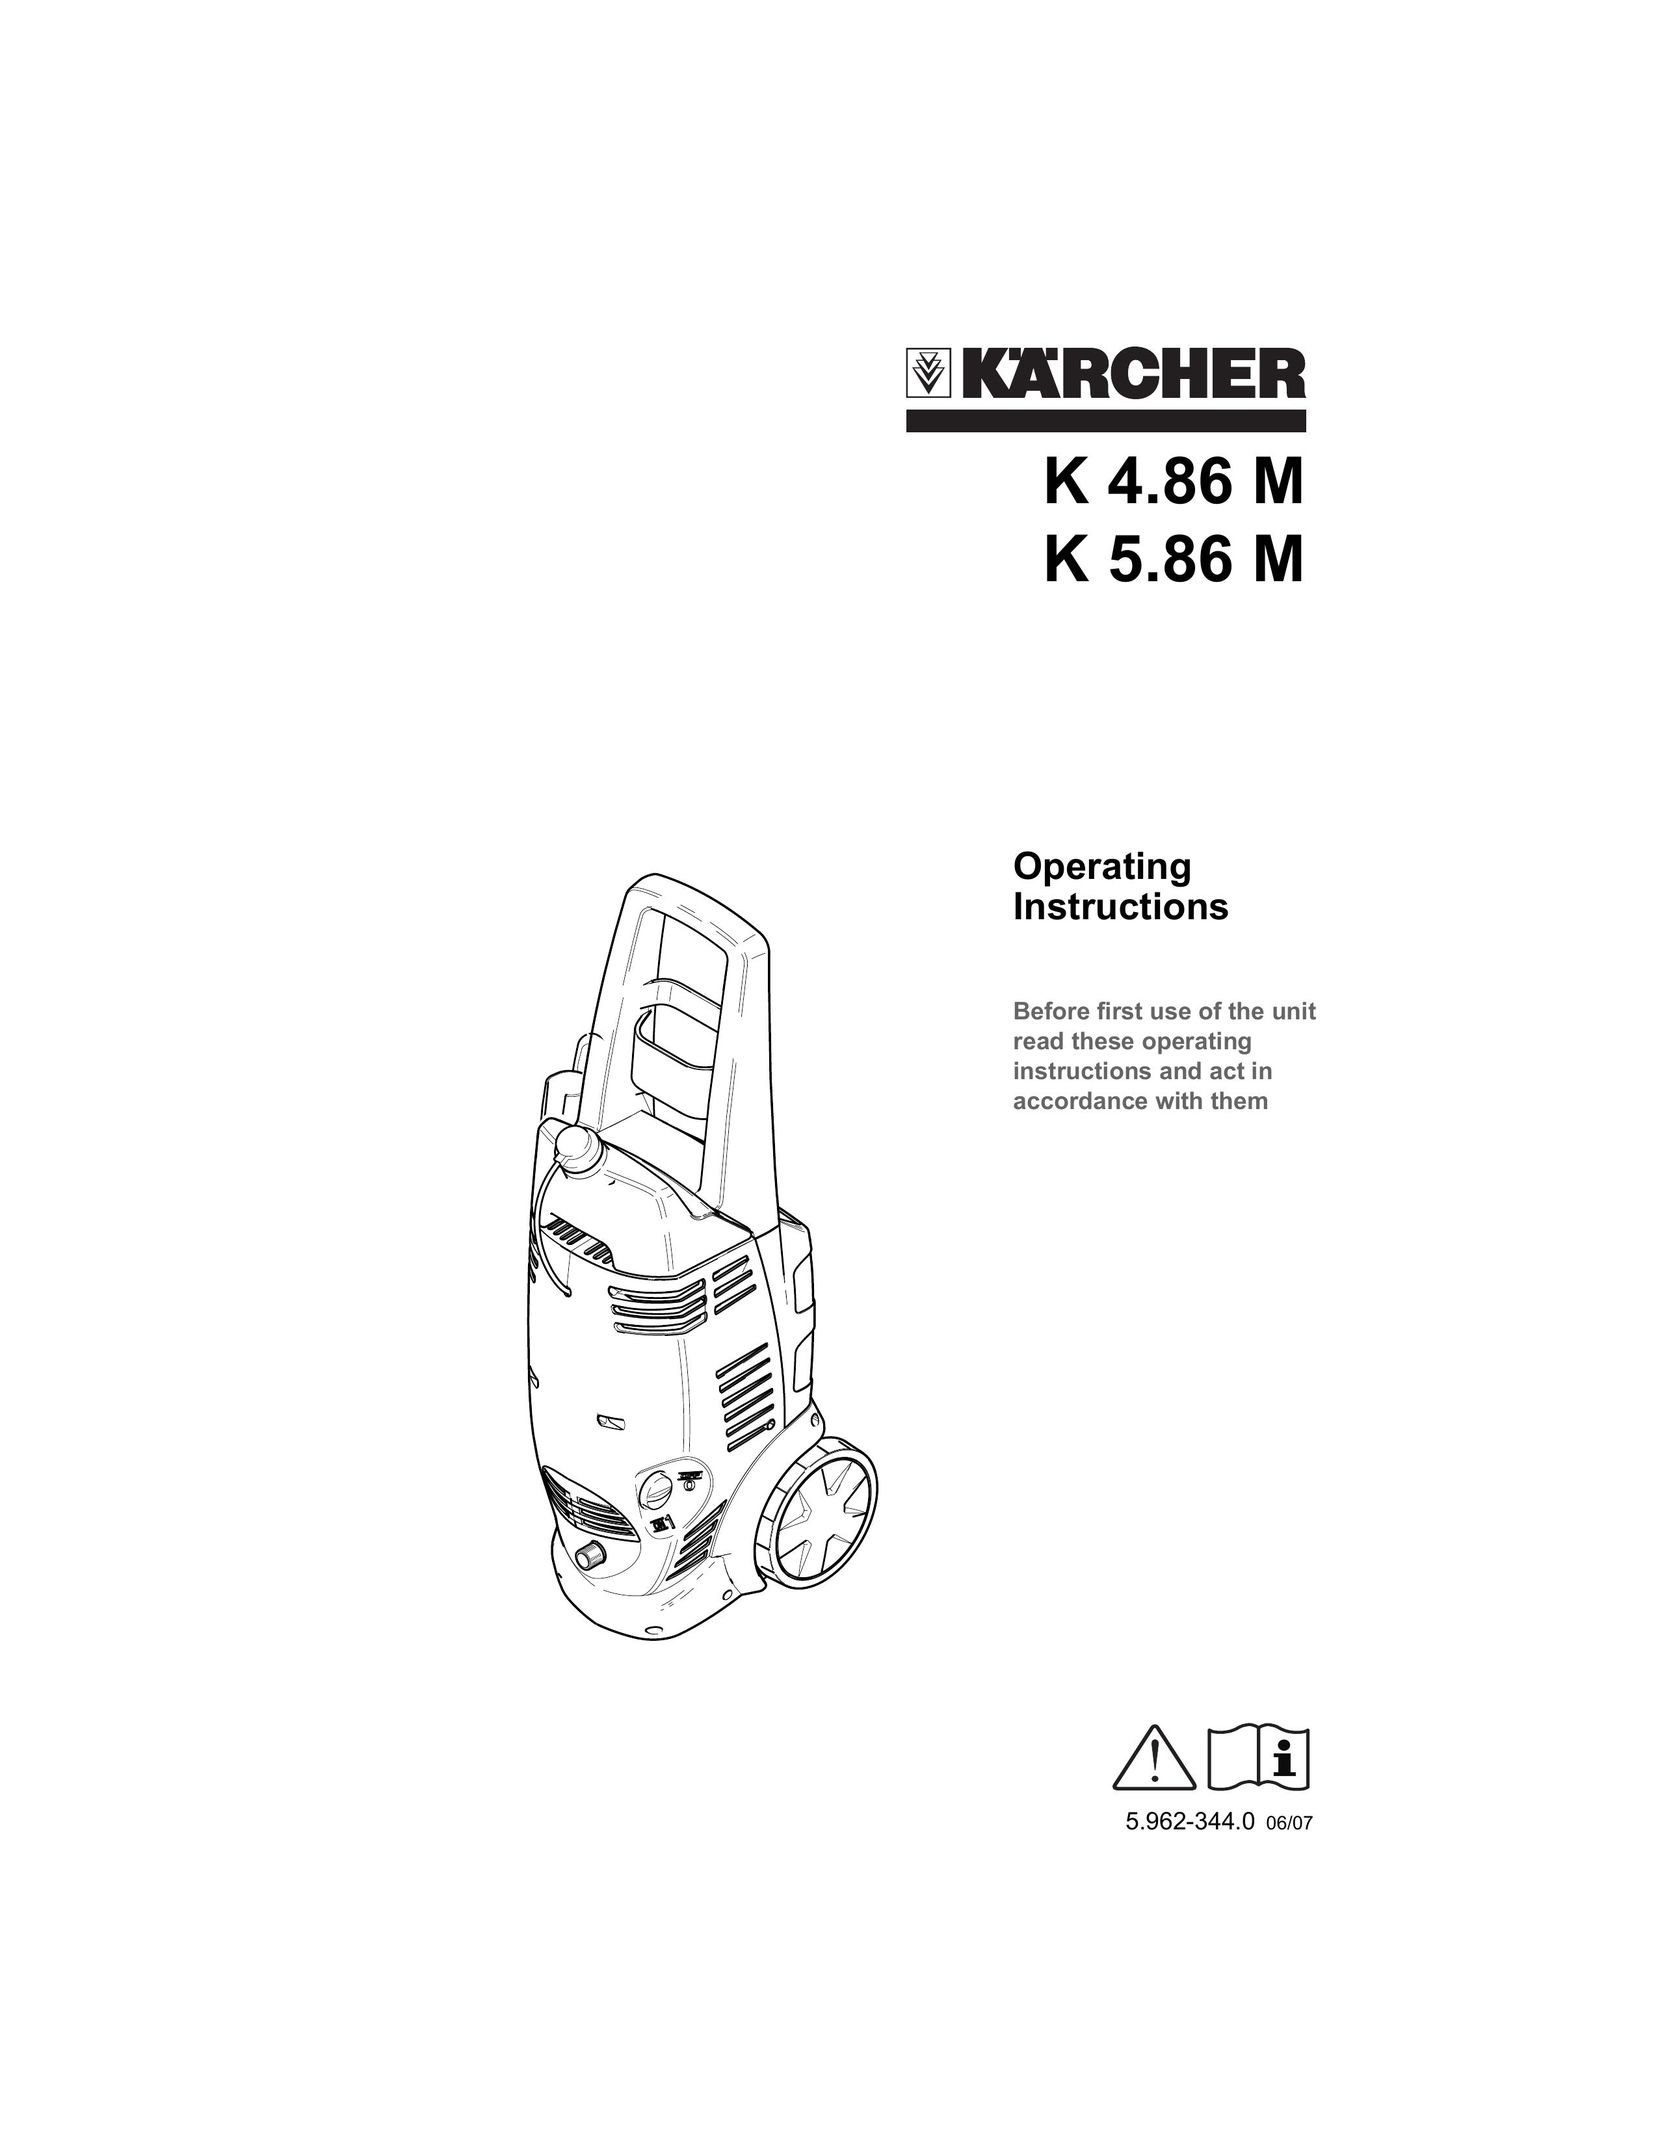 Karcher K 5.86 M Carpet Cleaner User Manual